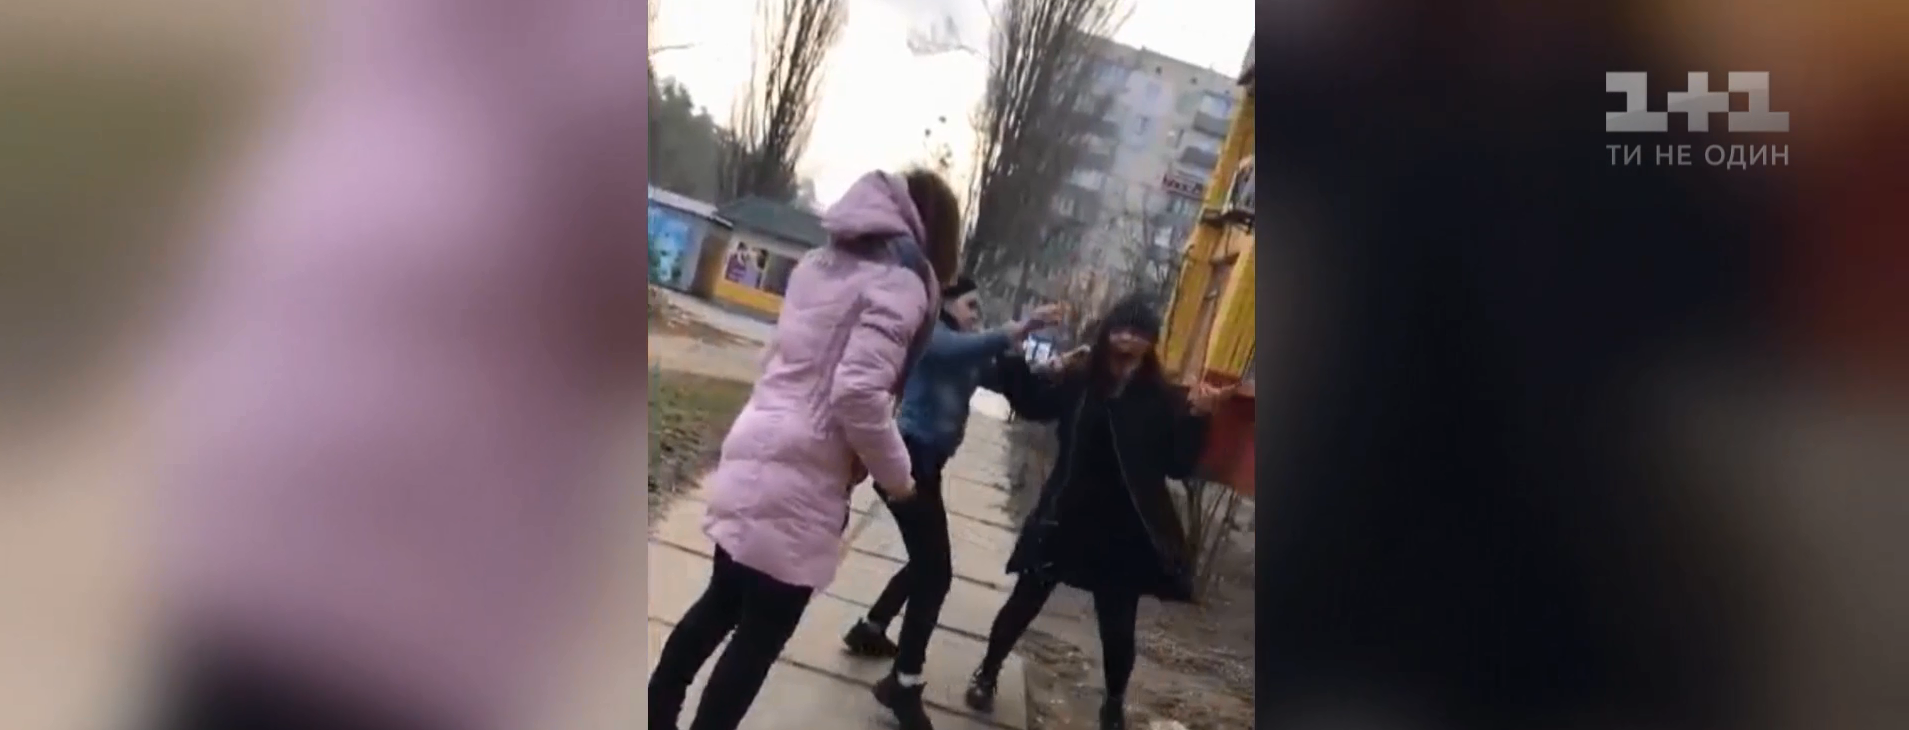 В Киеве на Борщаговке девочки избили одноклассницу и выложили видео в соцсети